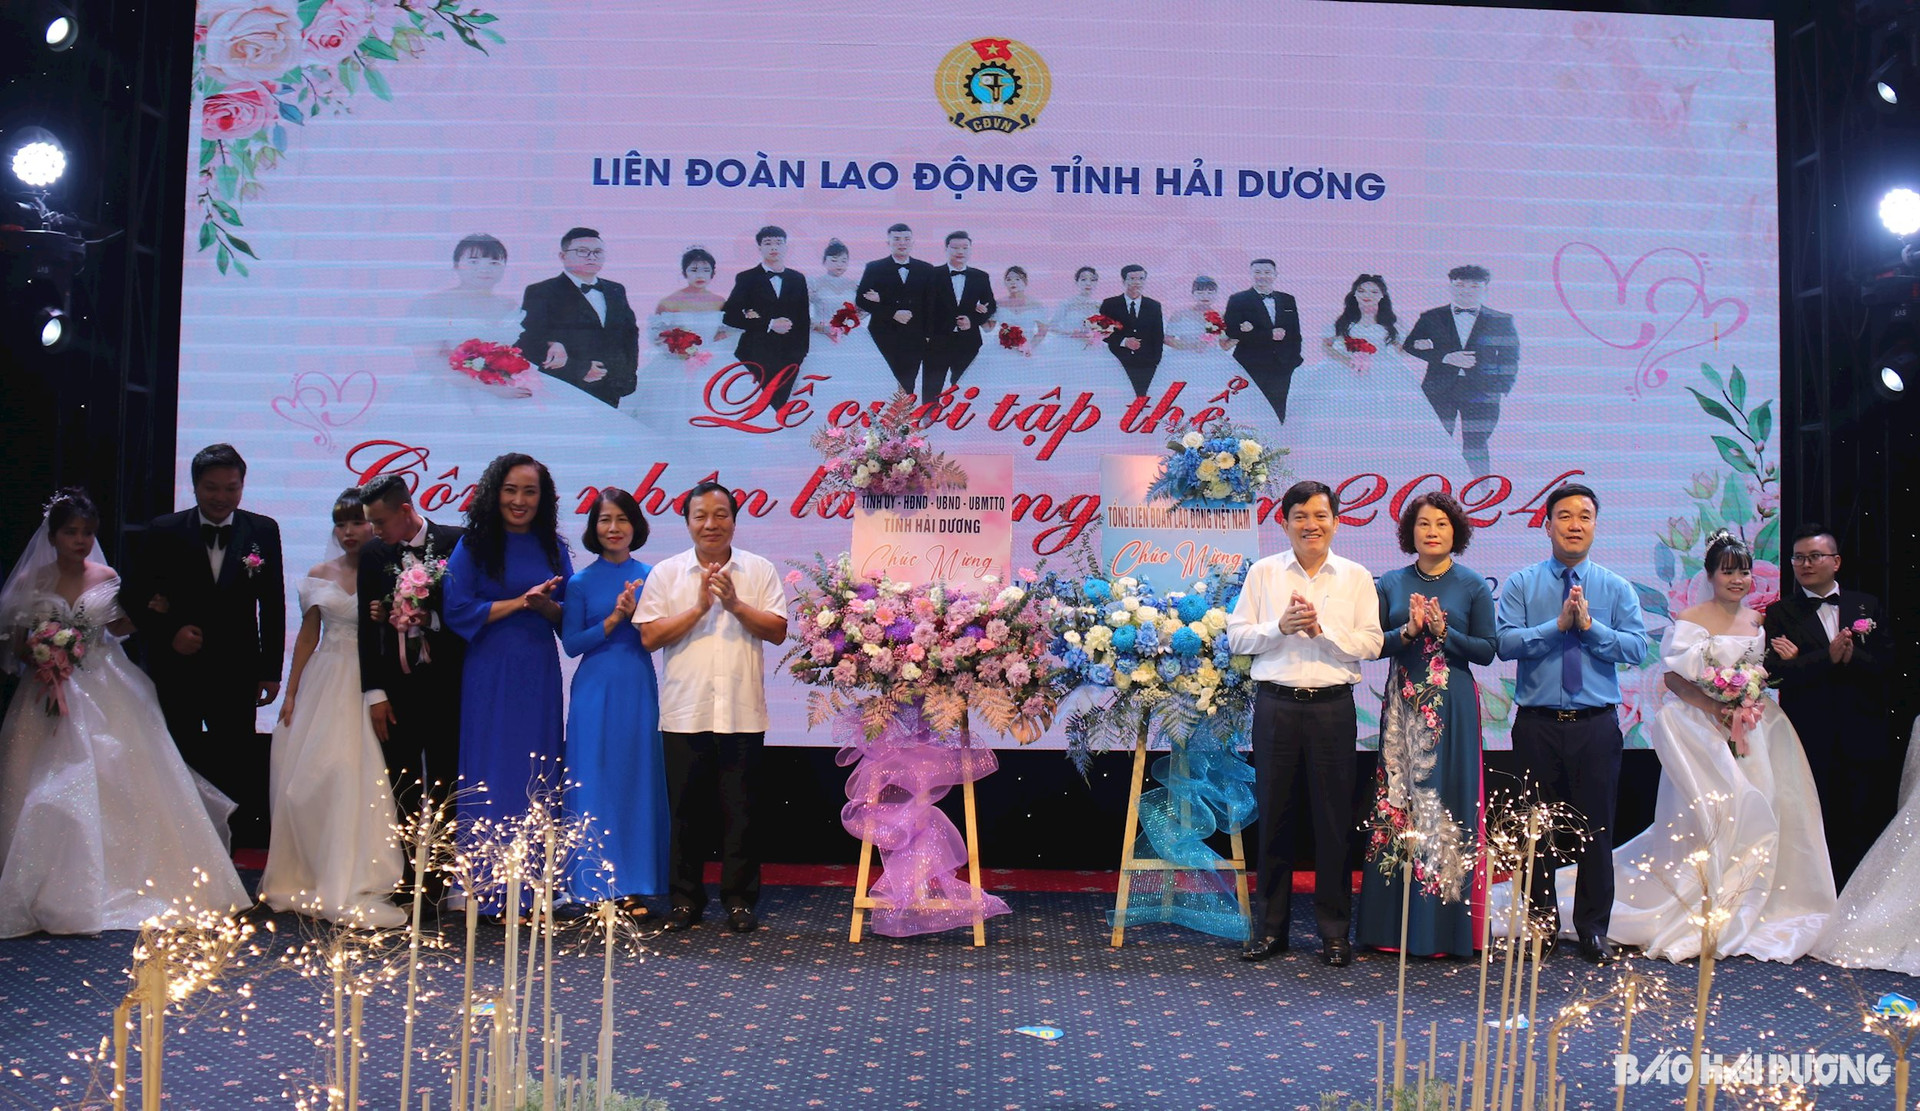 Các đồng chí lãnh đạo Tổng Liên đoàn Lao động Việt Nam, lãnh đạo Tỉnh ủy Hải Dương tặng hoa chúc mừng Liên đoàn Lao động tỉnh và các cặp đôi 